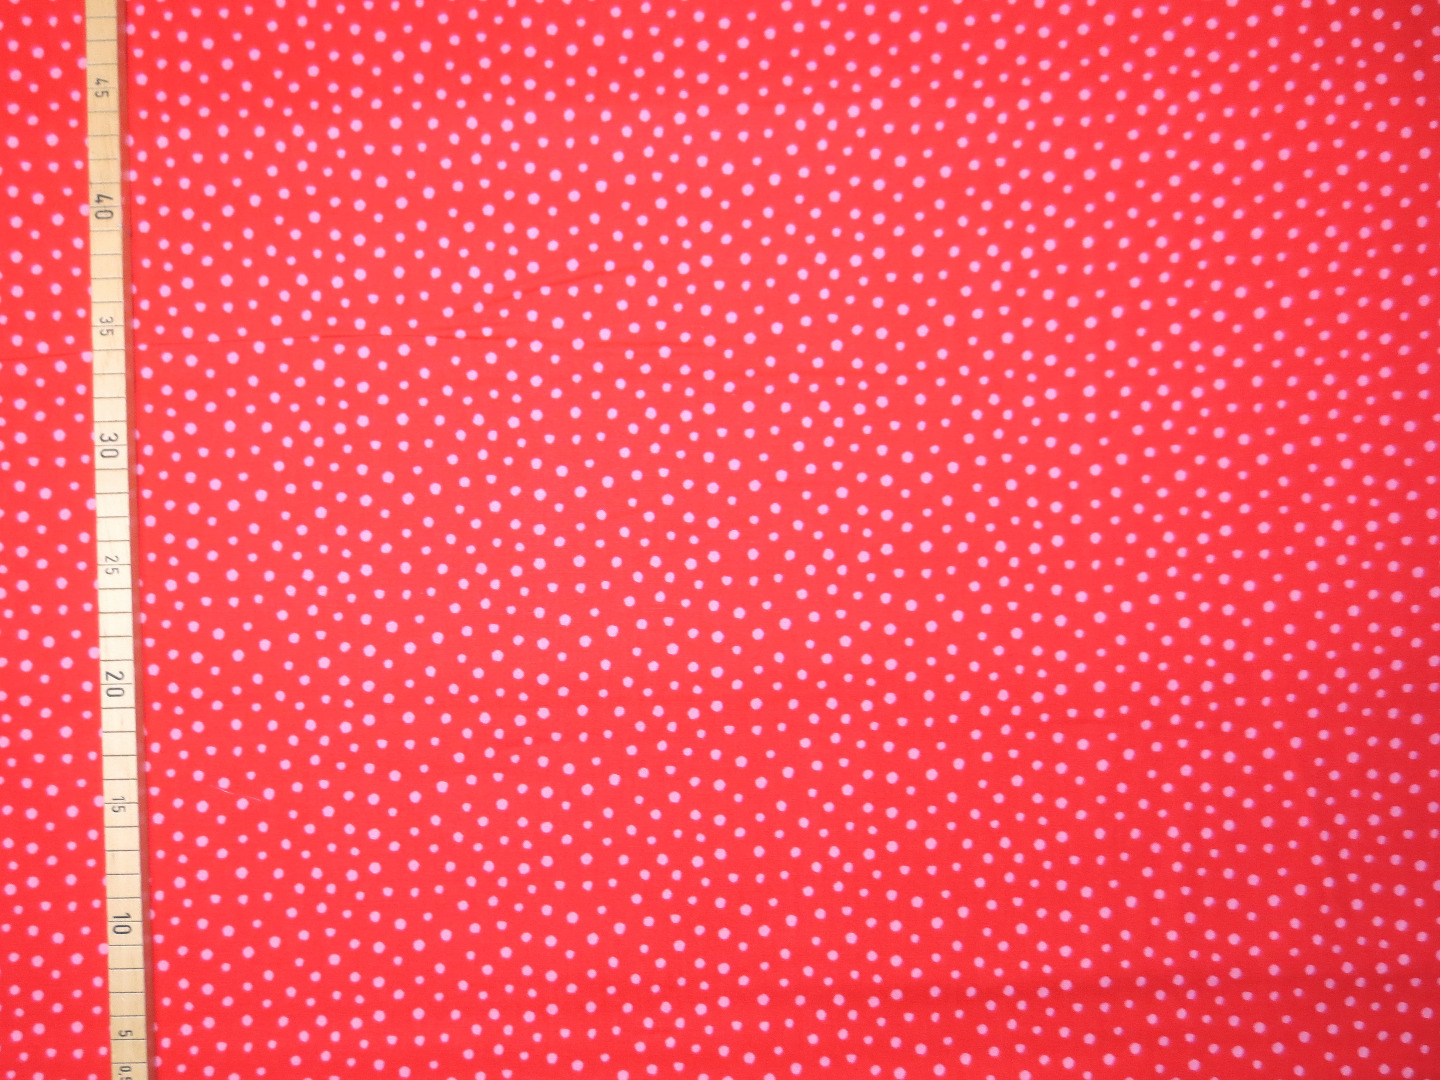 Baumwollstoff Punkte - rot-rosa - Westfalenstoffe - 100 Baumwolle - Junge Linie 2